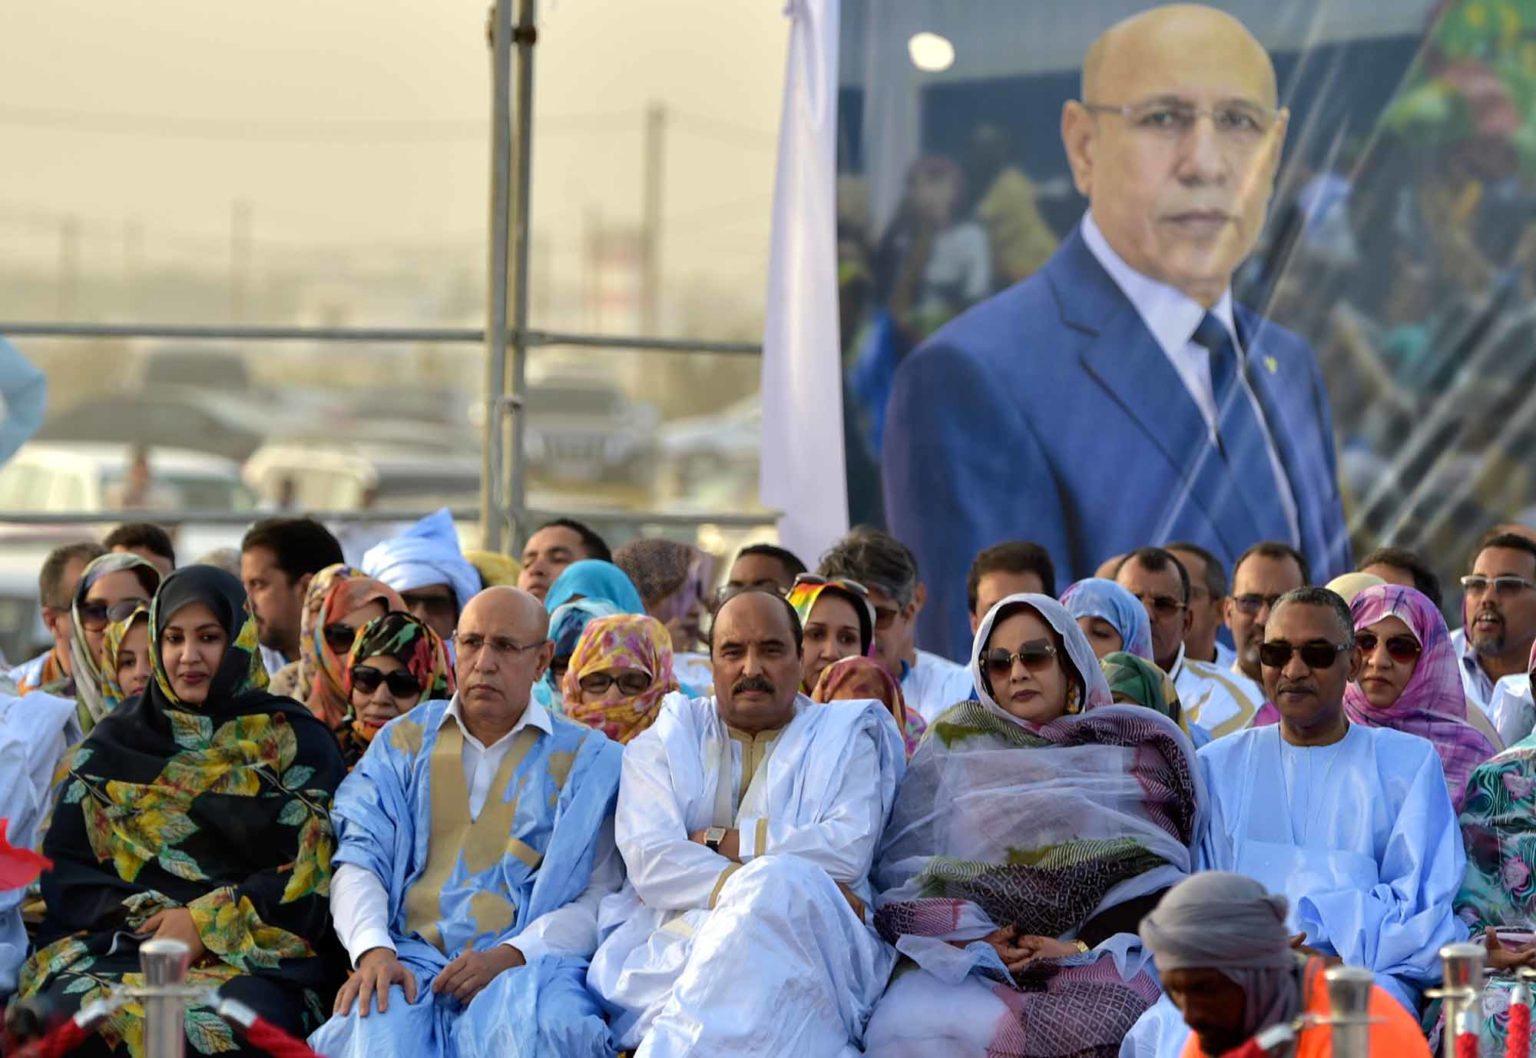 Mauritanie: une intense campagne de fake news sème le doute au sommet de l’Etat